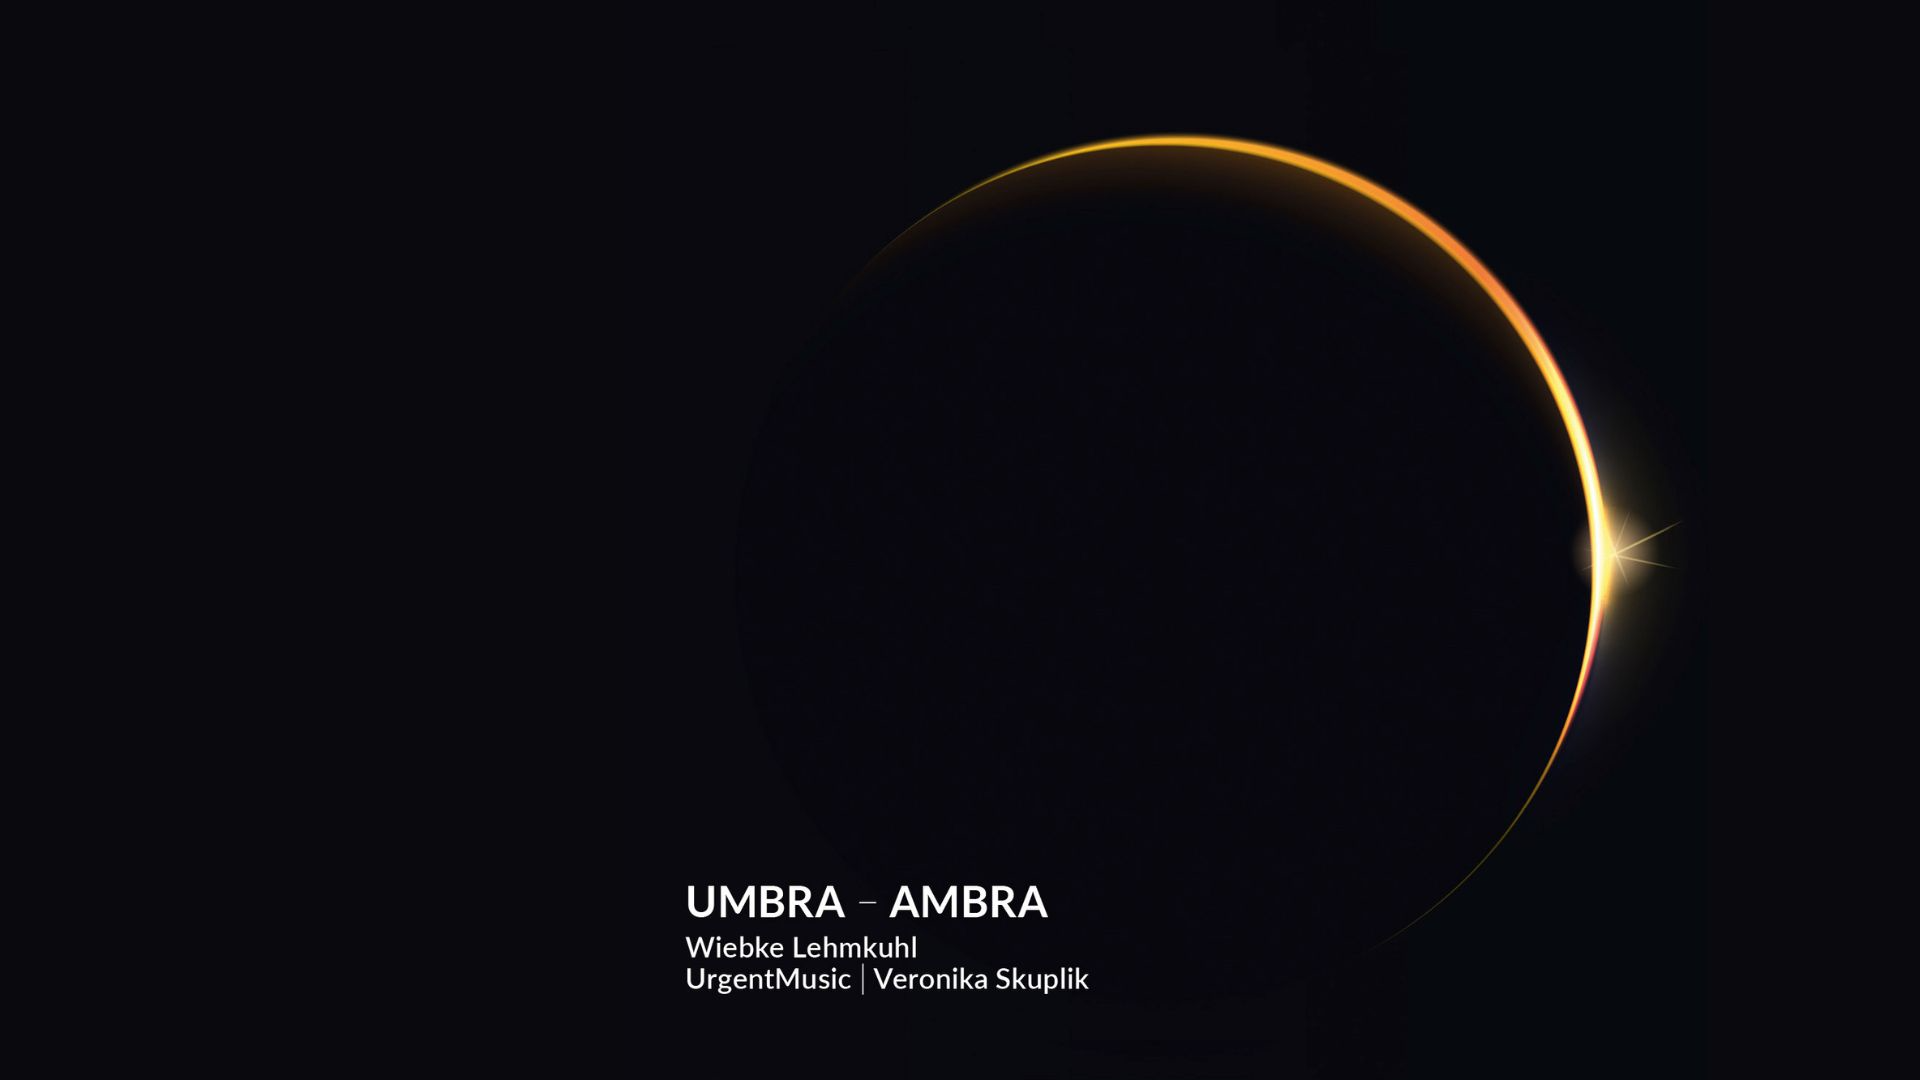 New album: Umbra - Ambra